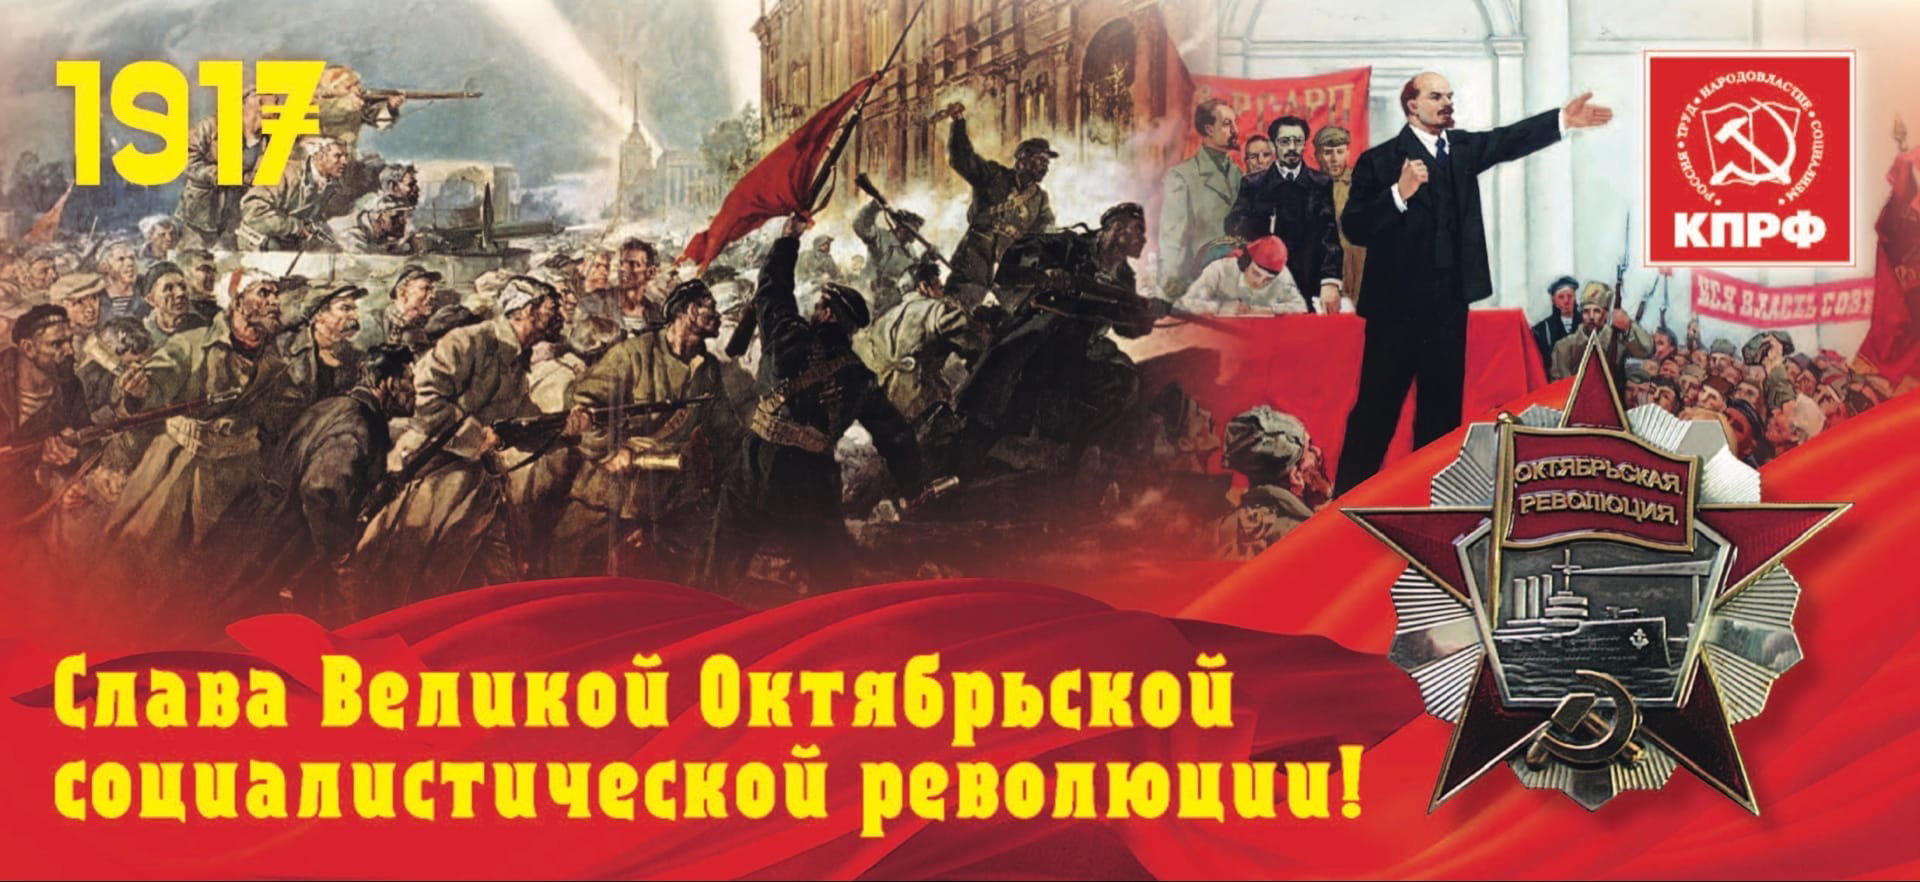 Октябрьской революции посвящена